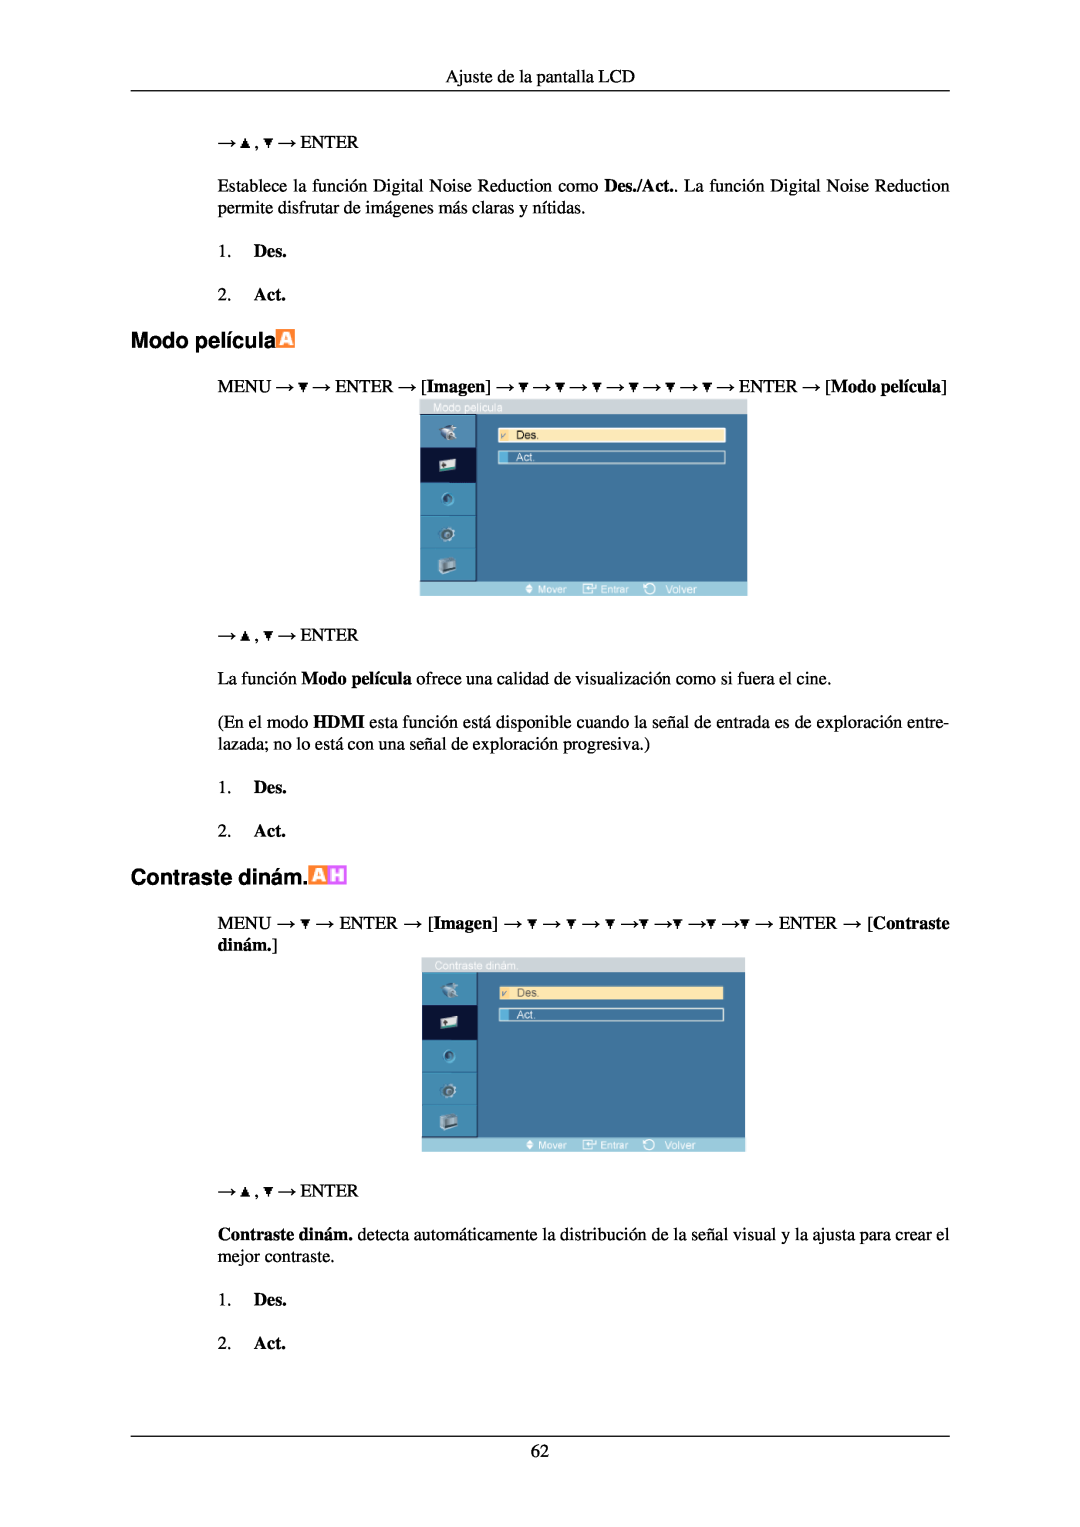 Samsung LH40TCQMBG/EN manual Modo película, MENU → → ENTER → Imagen → → → → → → → → ENTER → Contraste dinám, Des 2. Act 